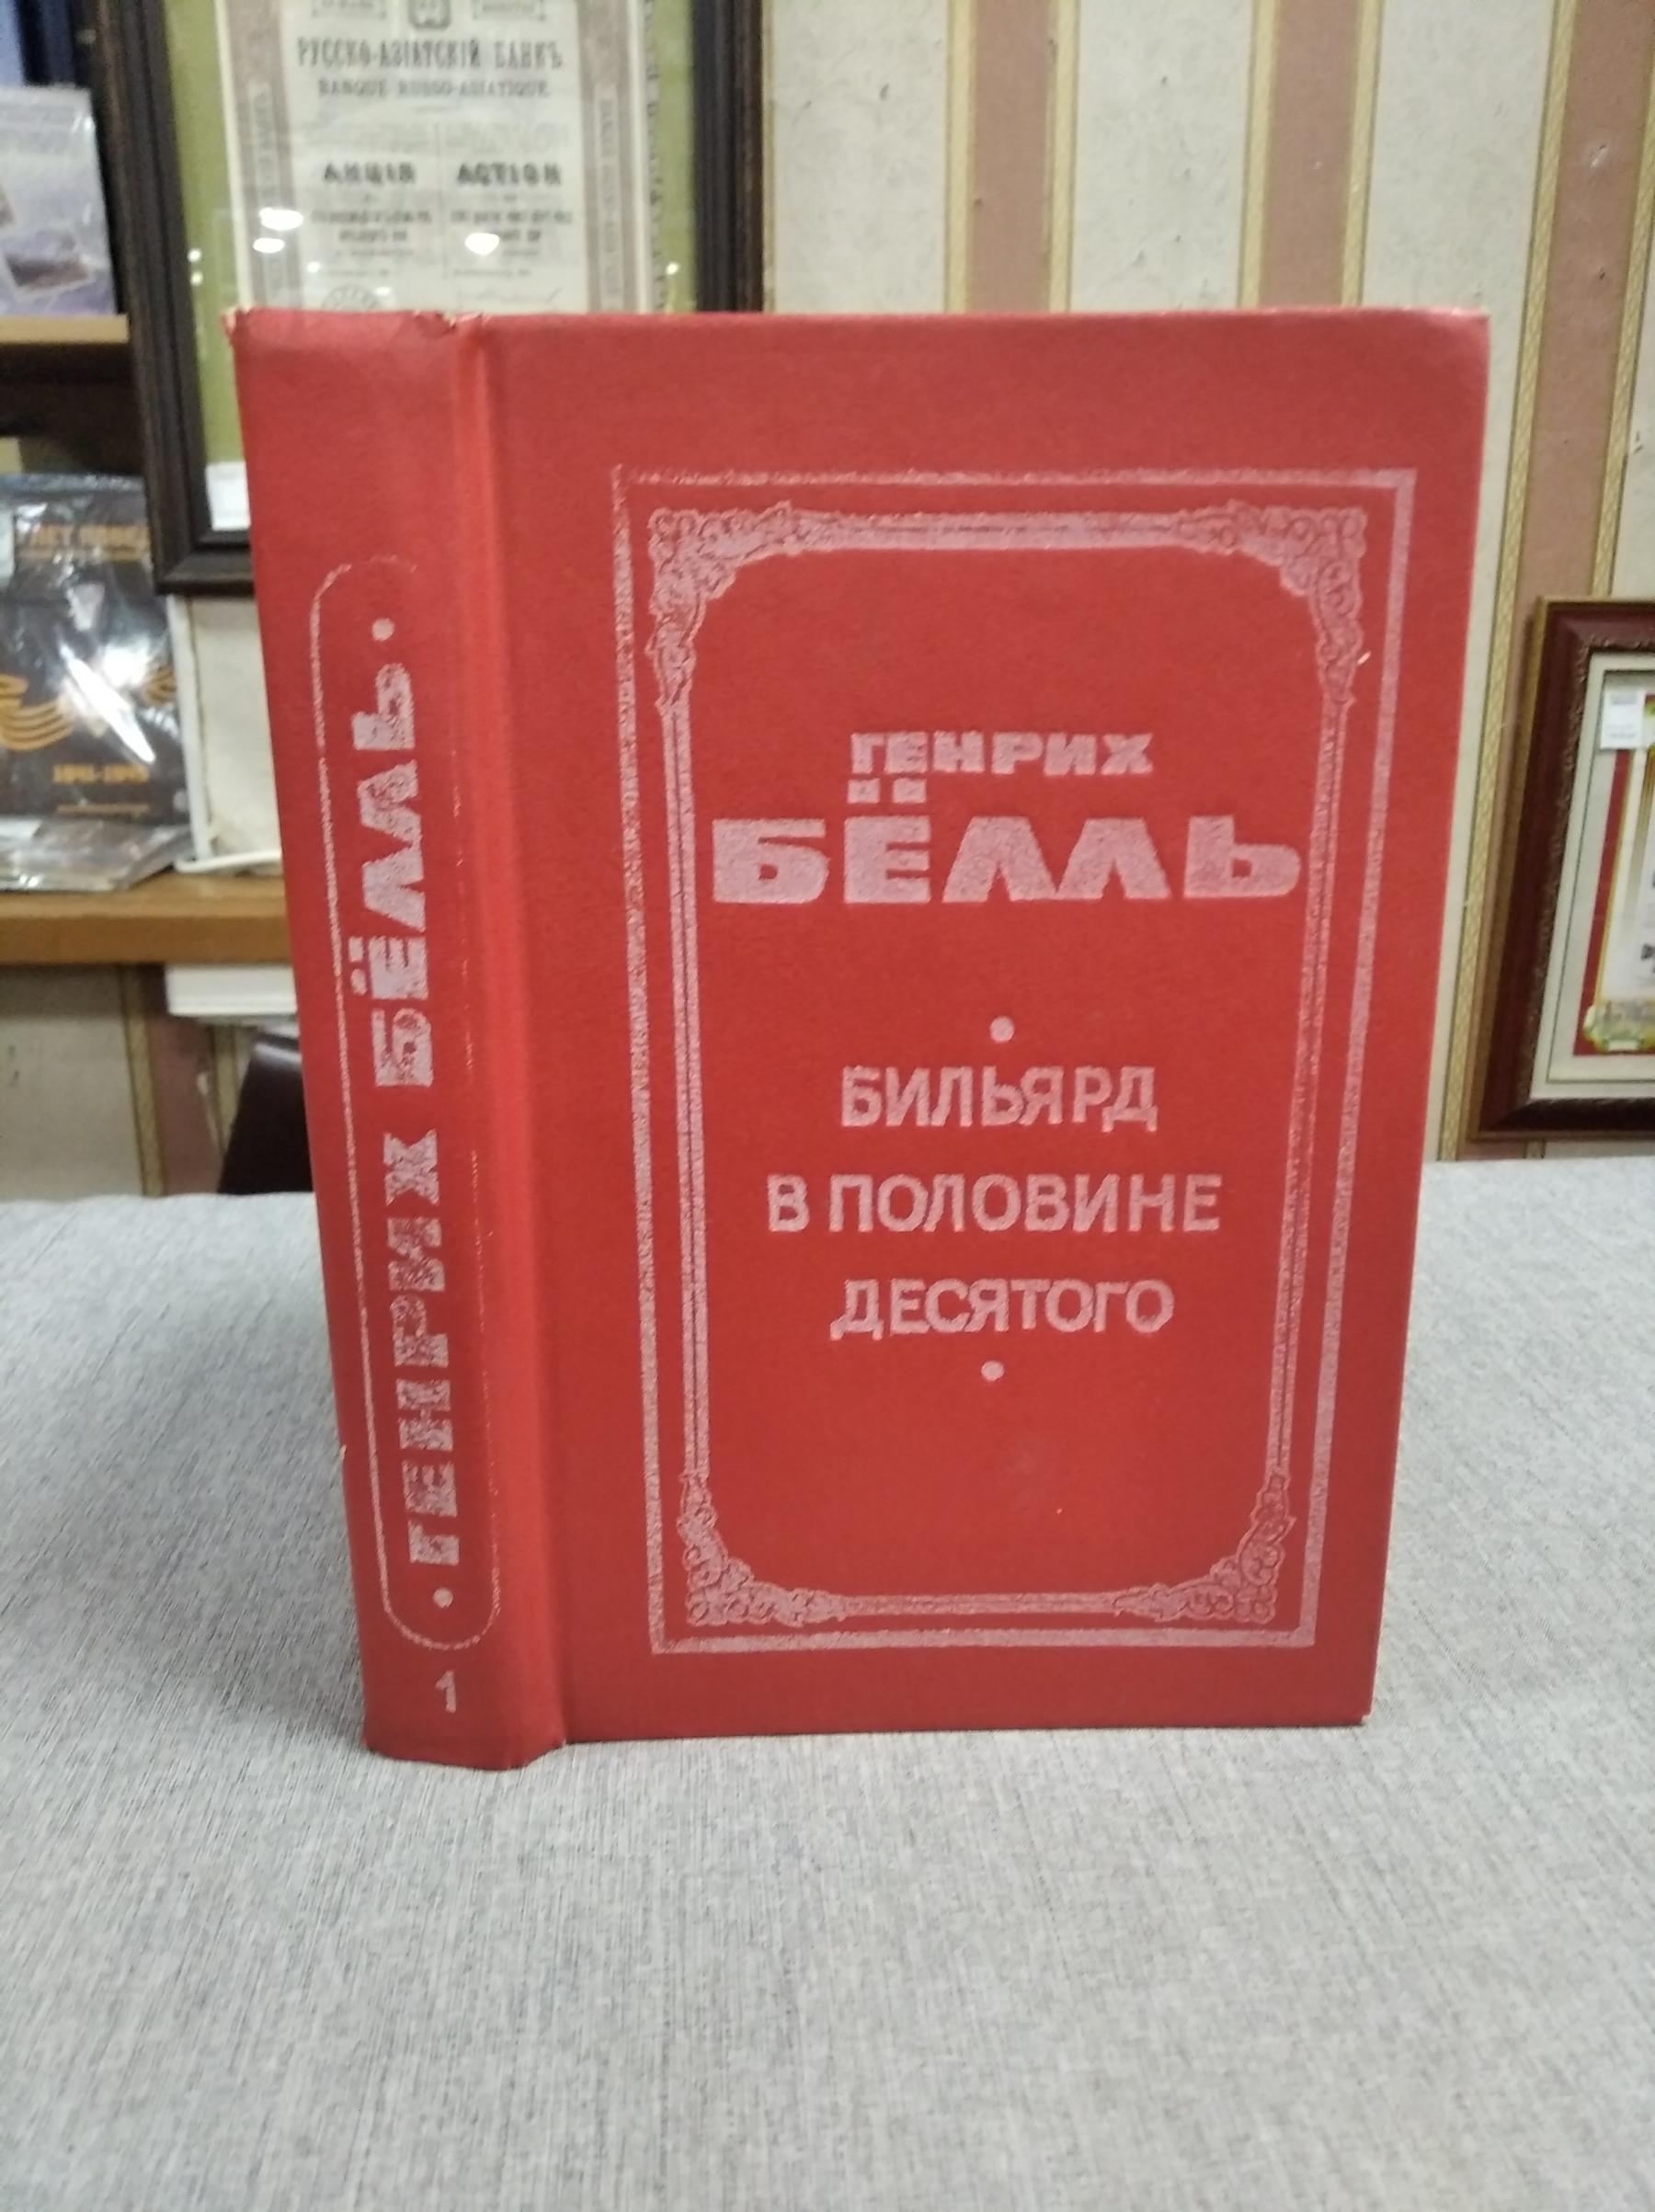 Книги о бильярде: купить в Москве по доступным ценам